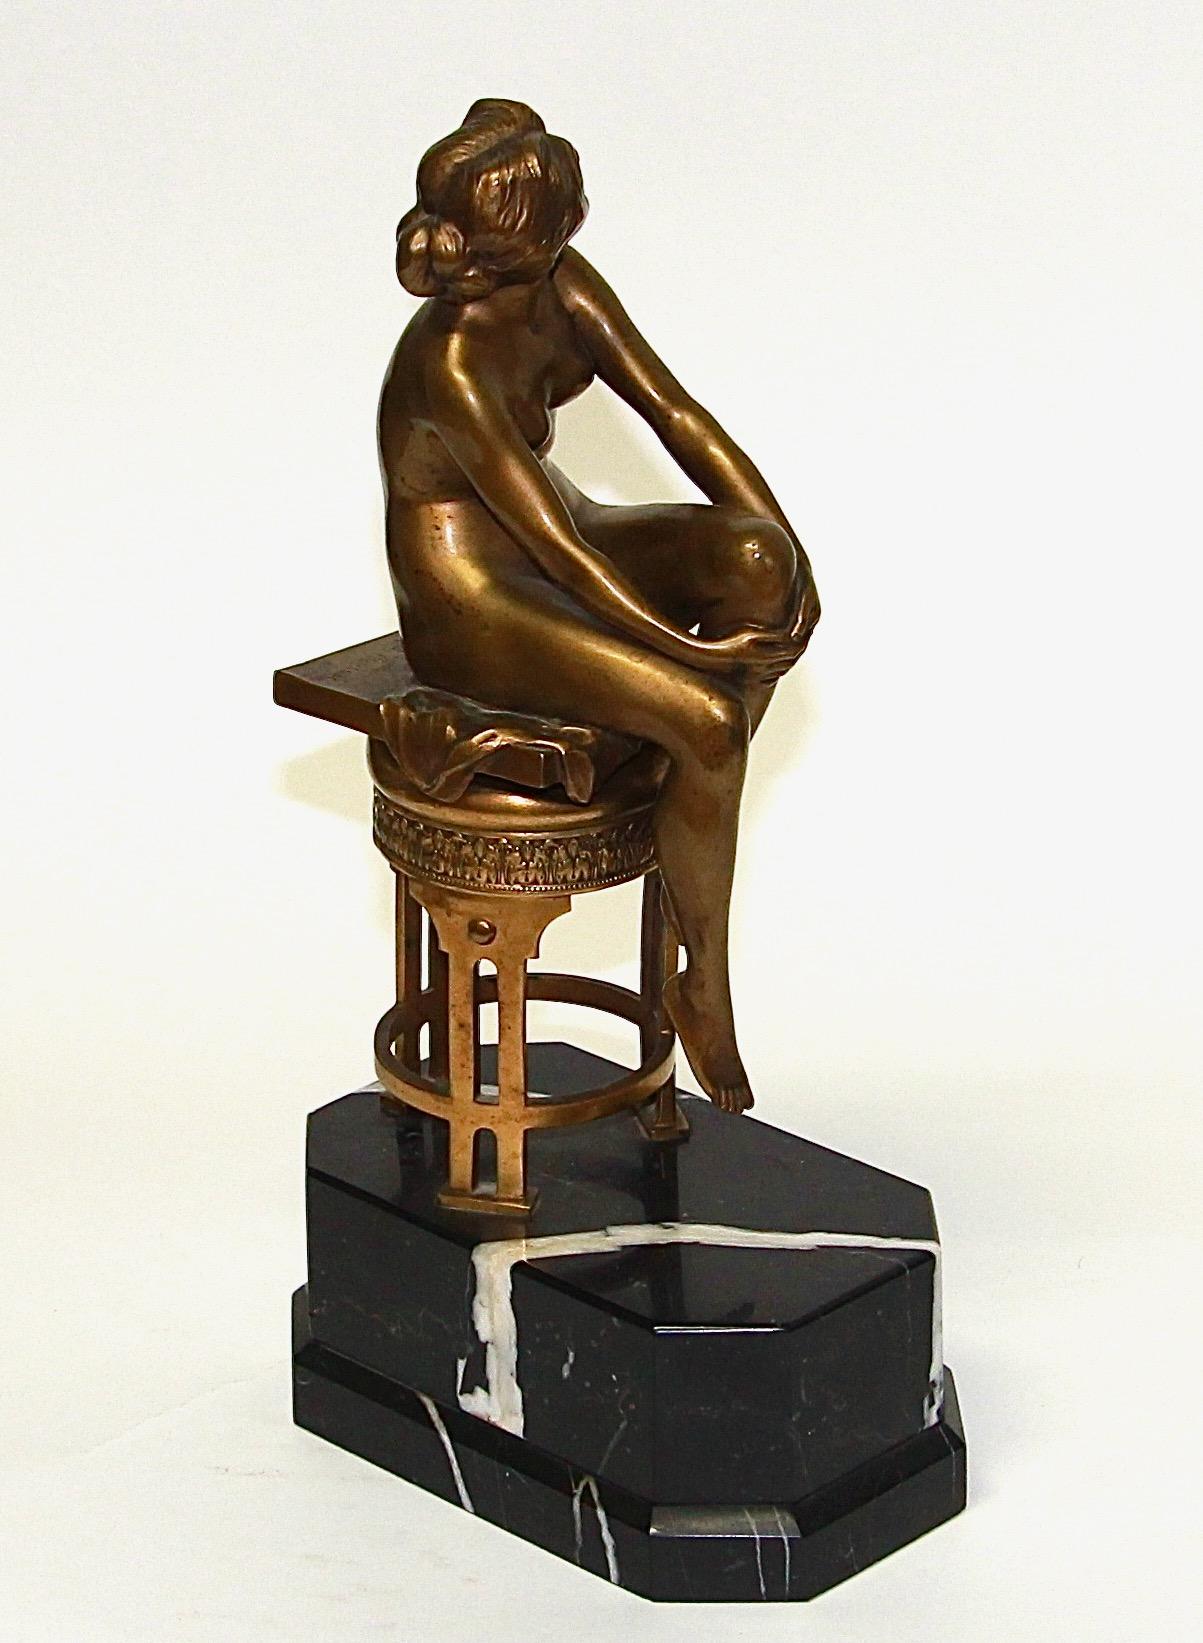 Dekorativer weiblicher Bronzeakt von Rudolf Marcuse. Sesshafte Schönheit.

Signiert und mit Gießereimarke Gladenbeck.

Der untere Teil der Skulptur (feuervergoldet) gehört wahrscheinlich nicht zum Akt, da er die Signatur eines anderen Künstlers